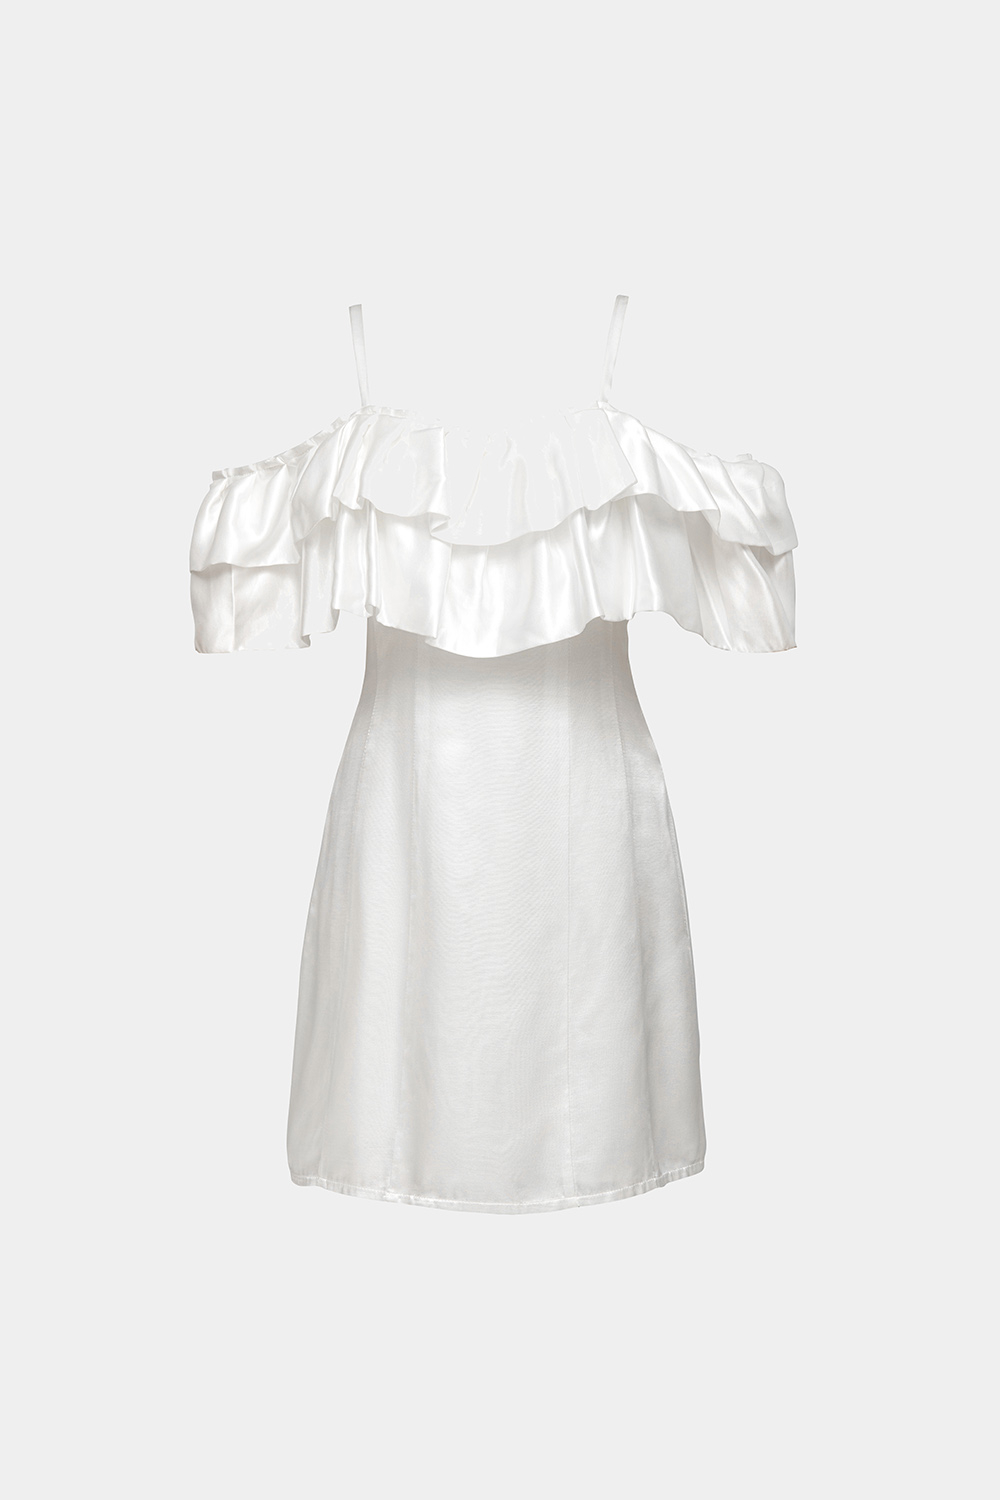 Đầm 2 dây trễ vai Váy trắng ngắn hai dây cao cấp dáng chữ A  MiNhi   MiNhi Fashion